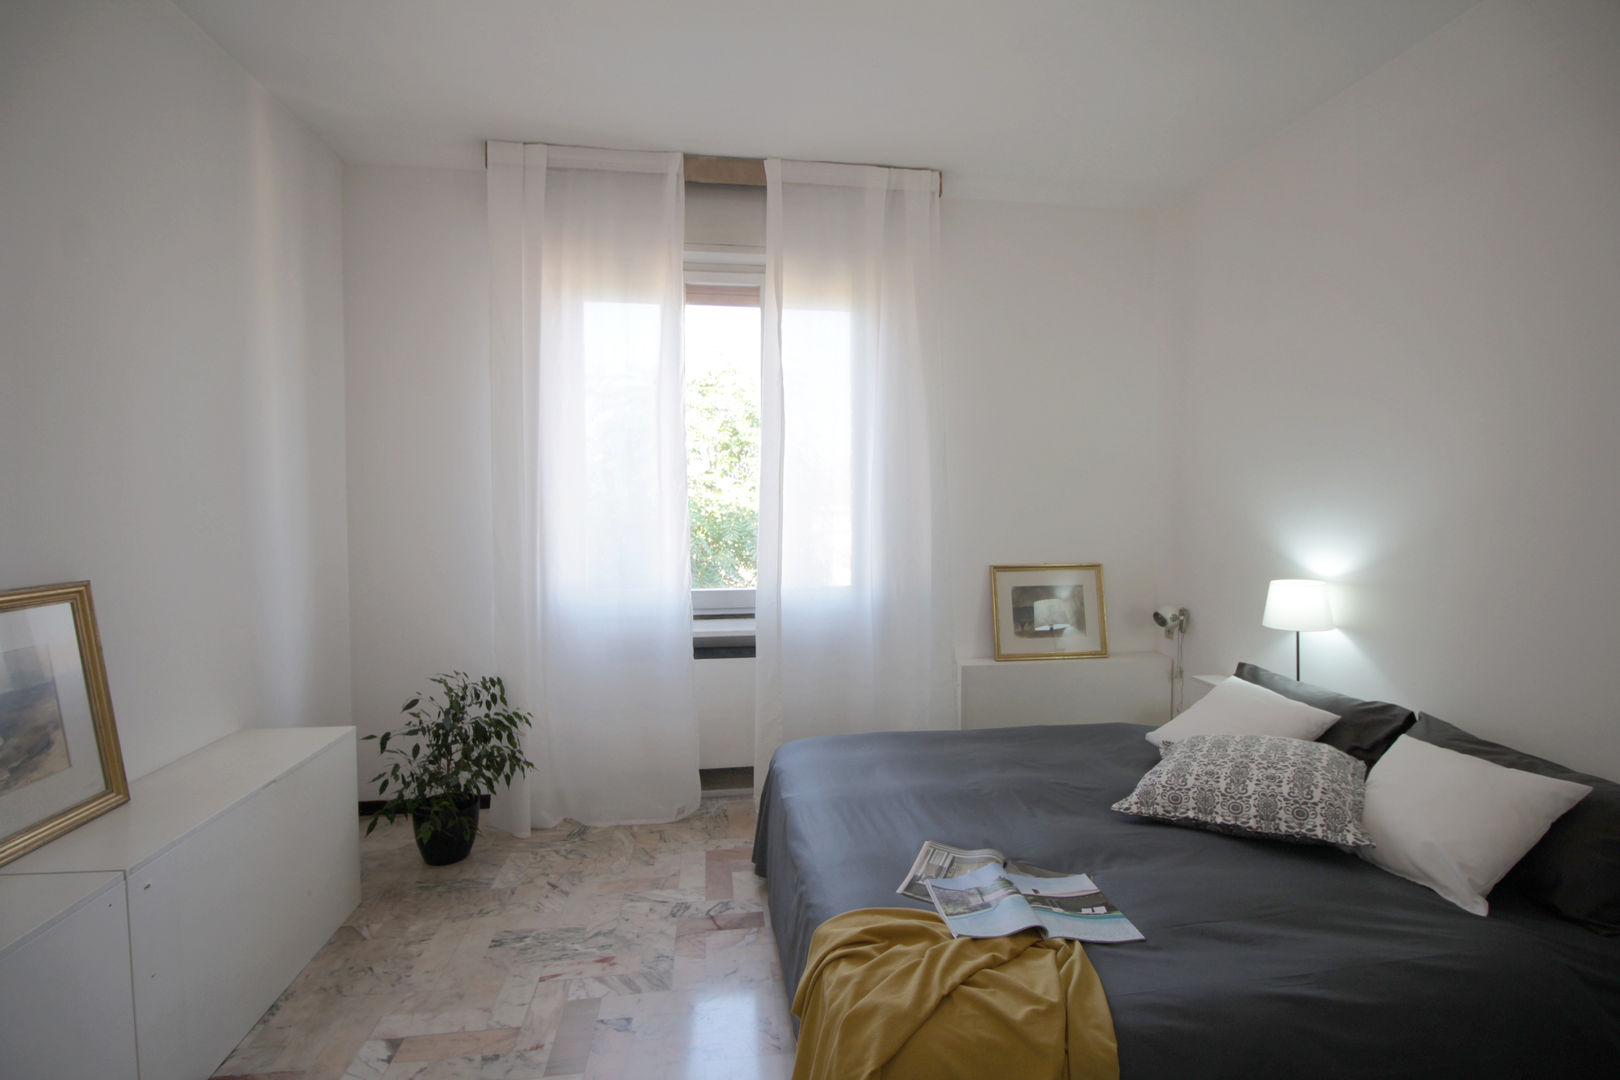 Camera da letto Michela Galletti Architetto e Home Stager